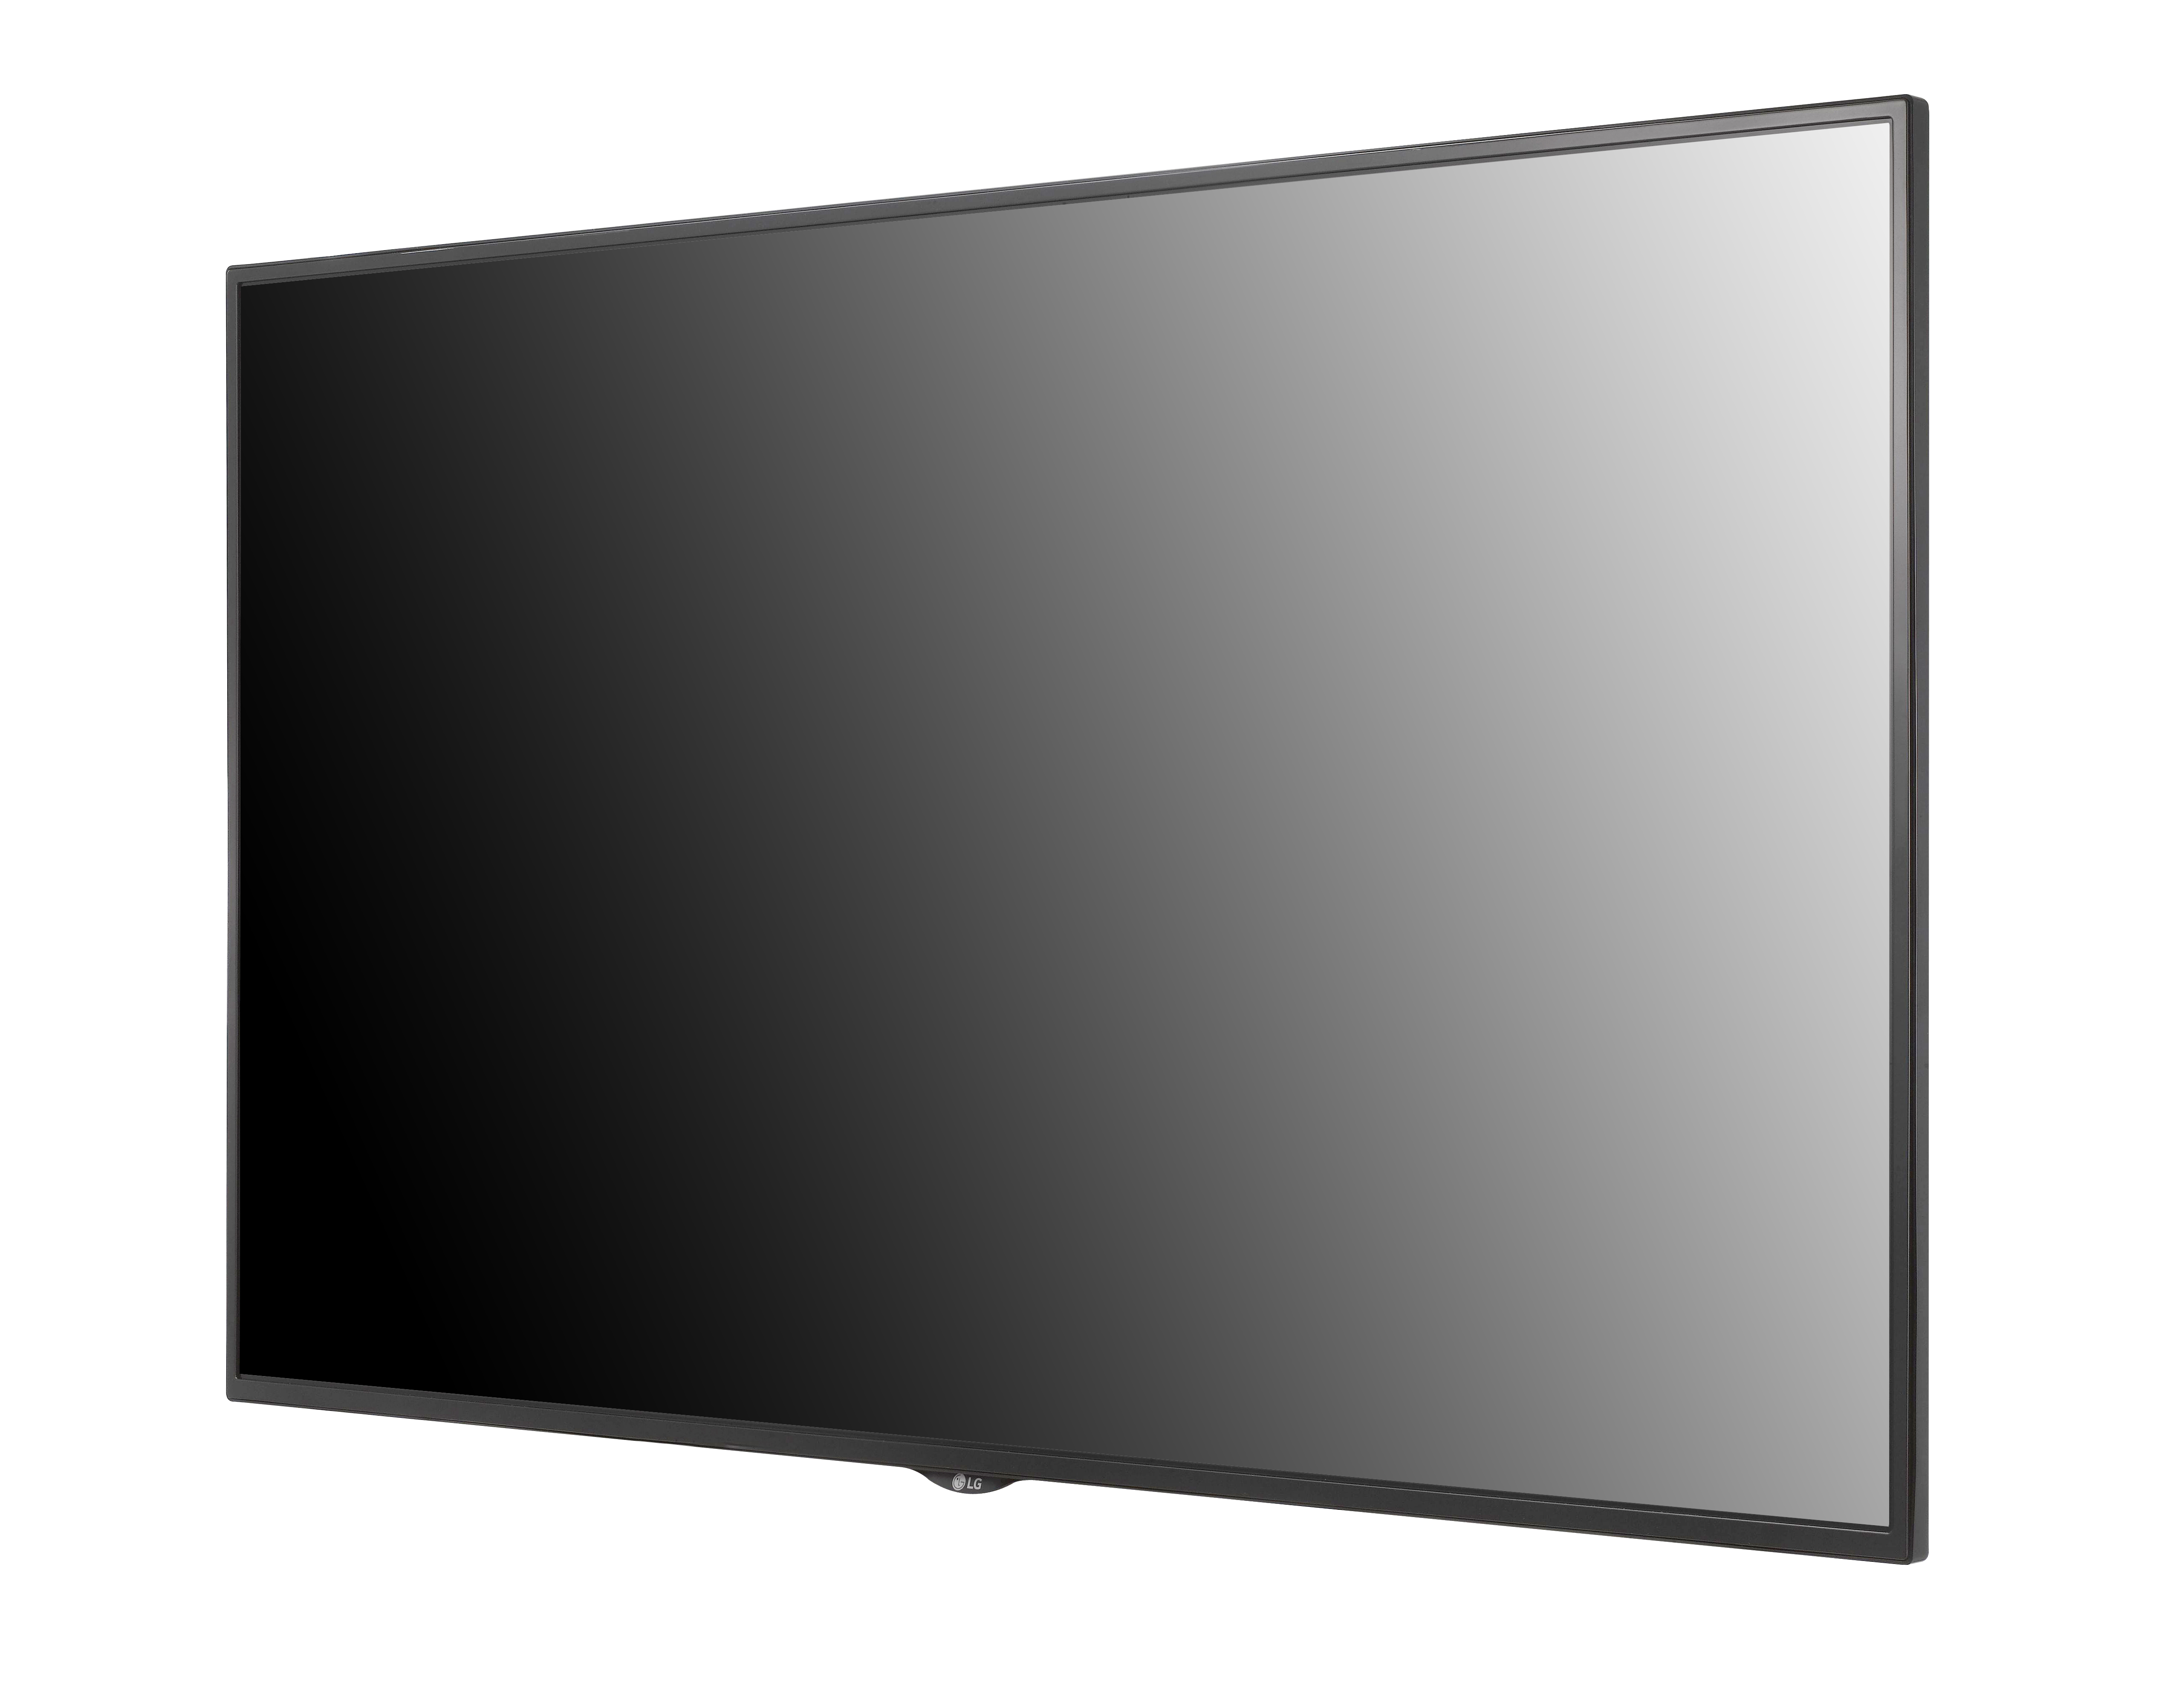 Первый плоский телевизор. Панель LG 43se3ke-b. Панель LG 32sm5ke-b. ЖК панель LG 32sm5ke-b. LG 55uh5c-bf.